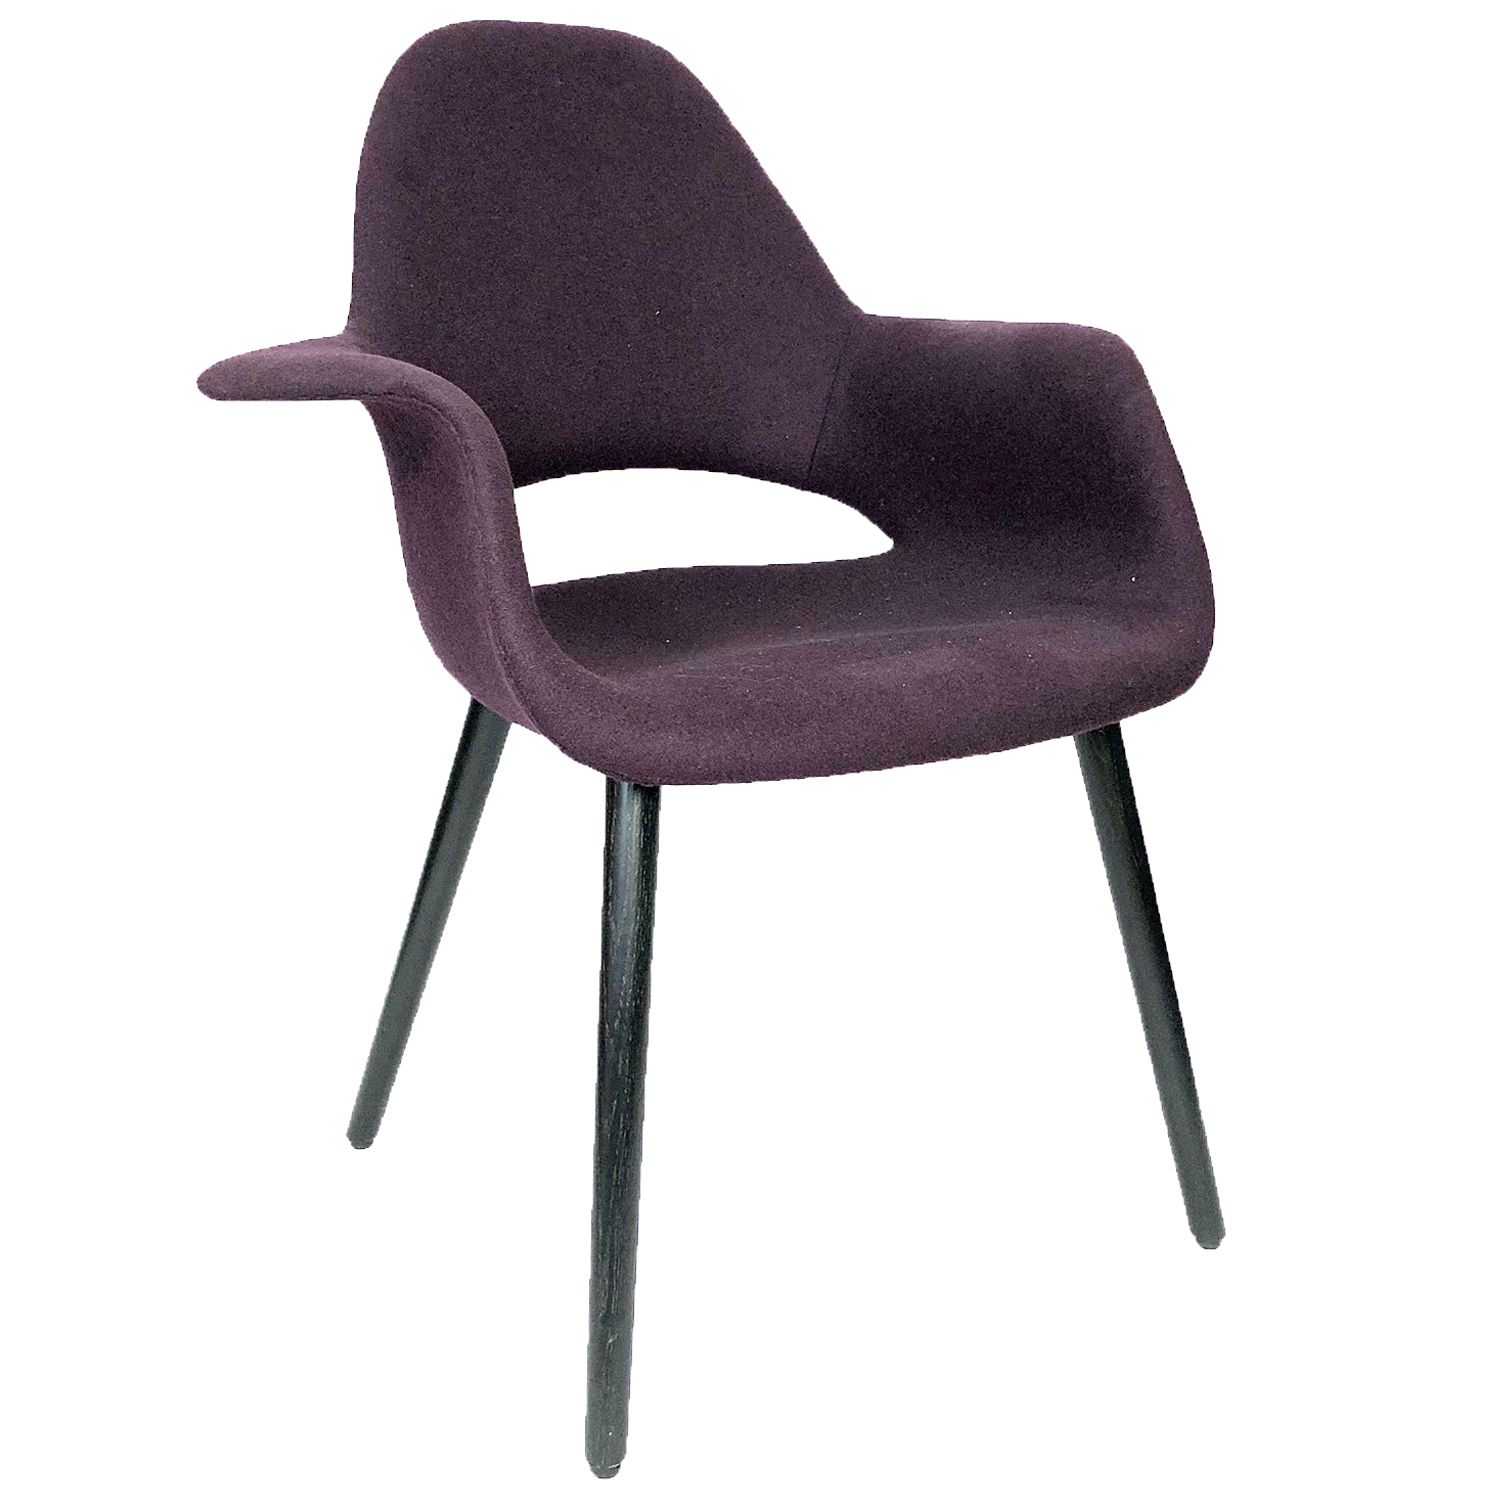 Výprodej Vitra designové židle Organic Chair (tmavě fialová) - DESIGNPROPAGANDA